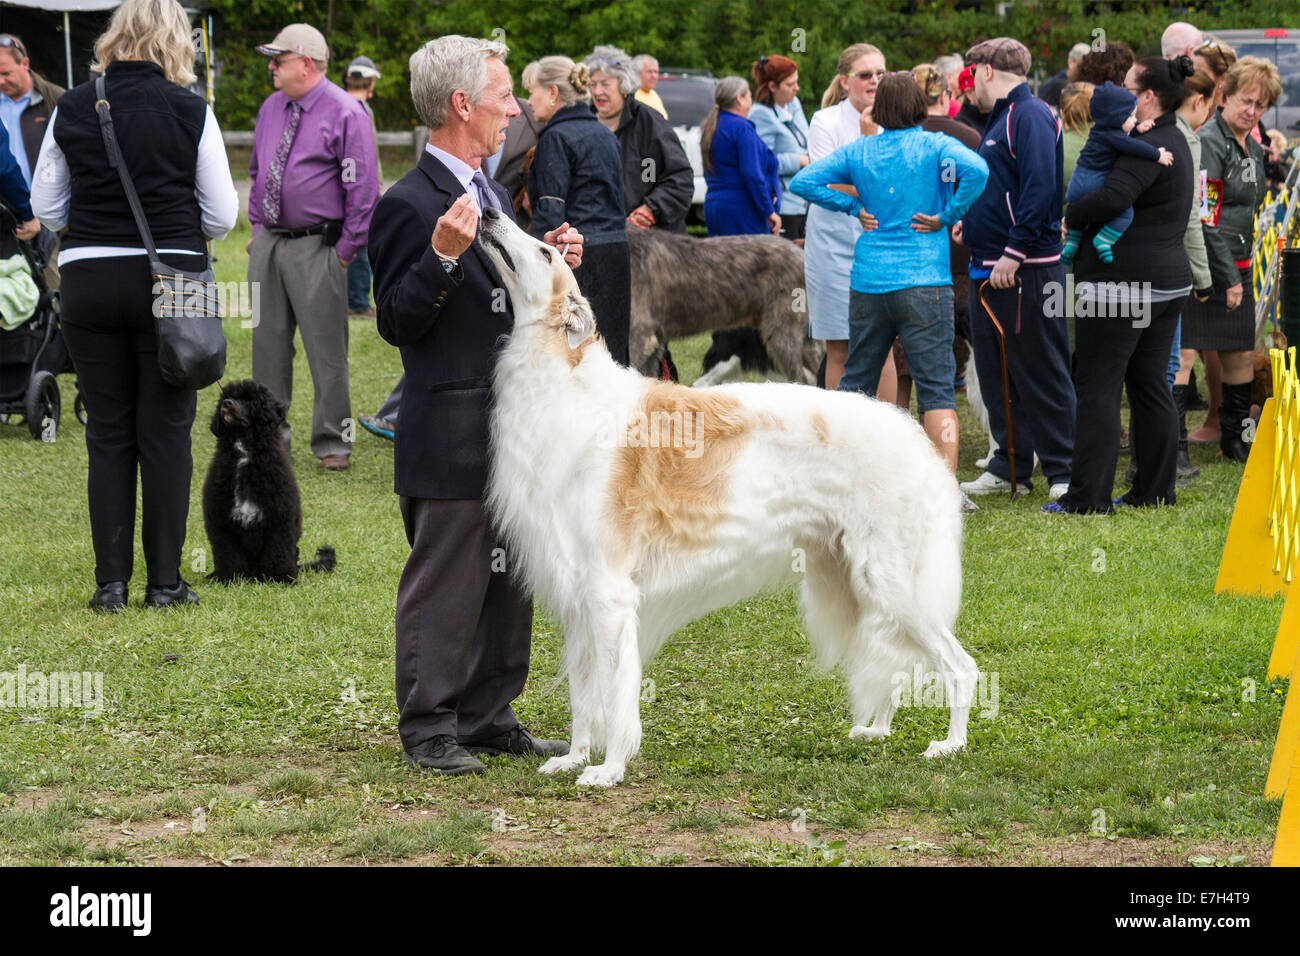 Chargeur avec Barzoï debout avec une foule de propriétaires et gestionnaires à l'échelle locale dog show. Banque D'Images